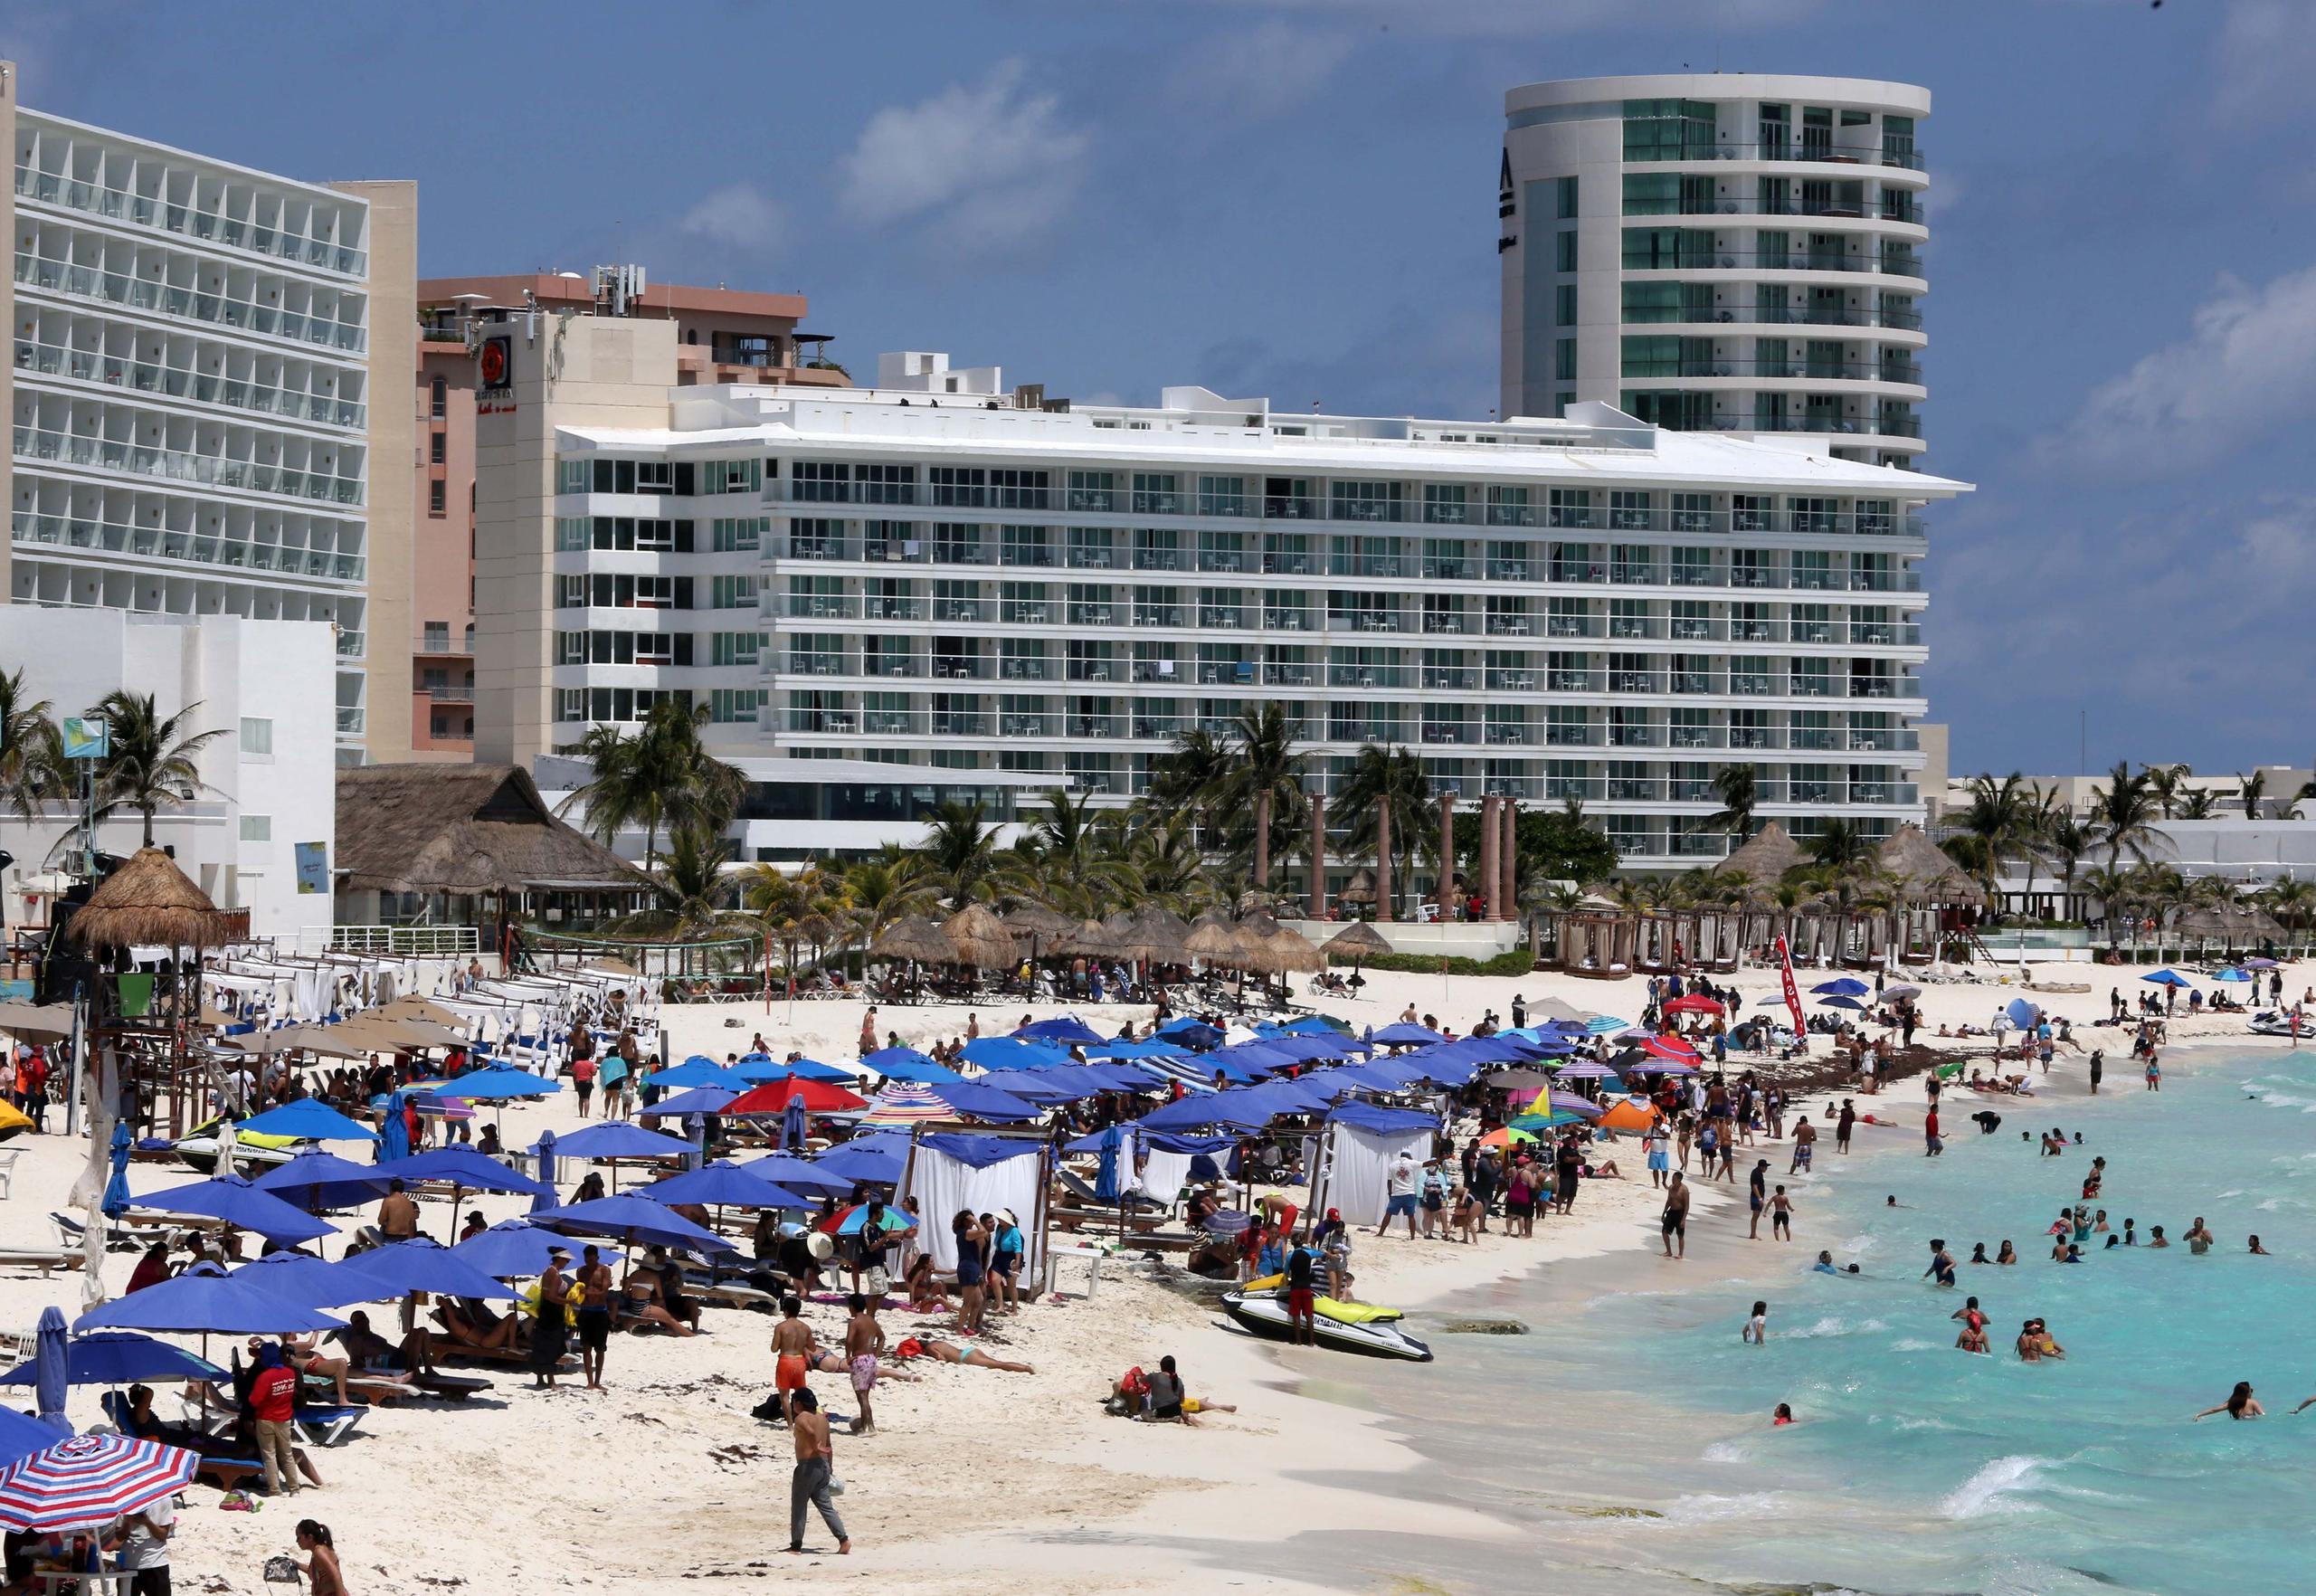 La violencia en Quintana Roo, donde están los complejos turísticos de Cancún, Playa Del Carmen y Tulum, ha disminuido algo desde los altos niveles de 2018 y 2019, cuando subieron los asesinatos.